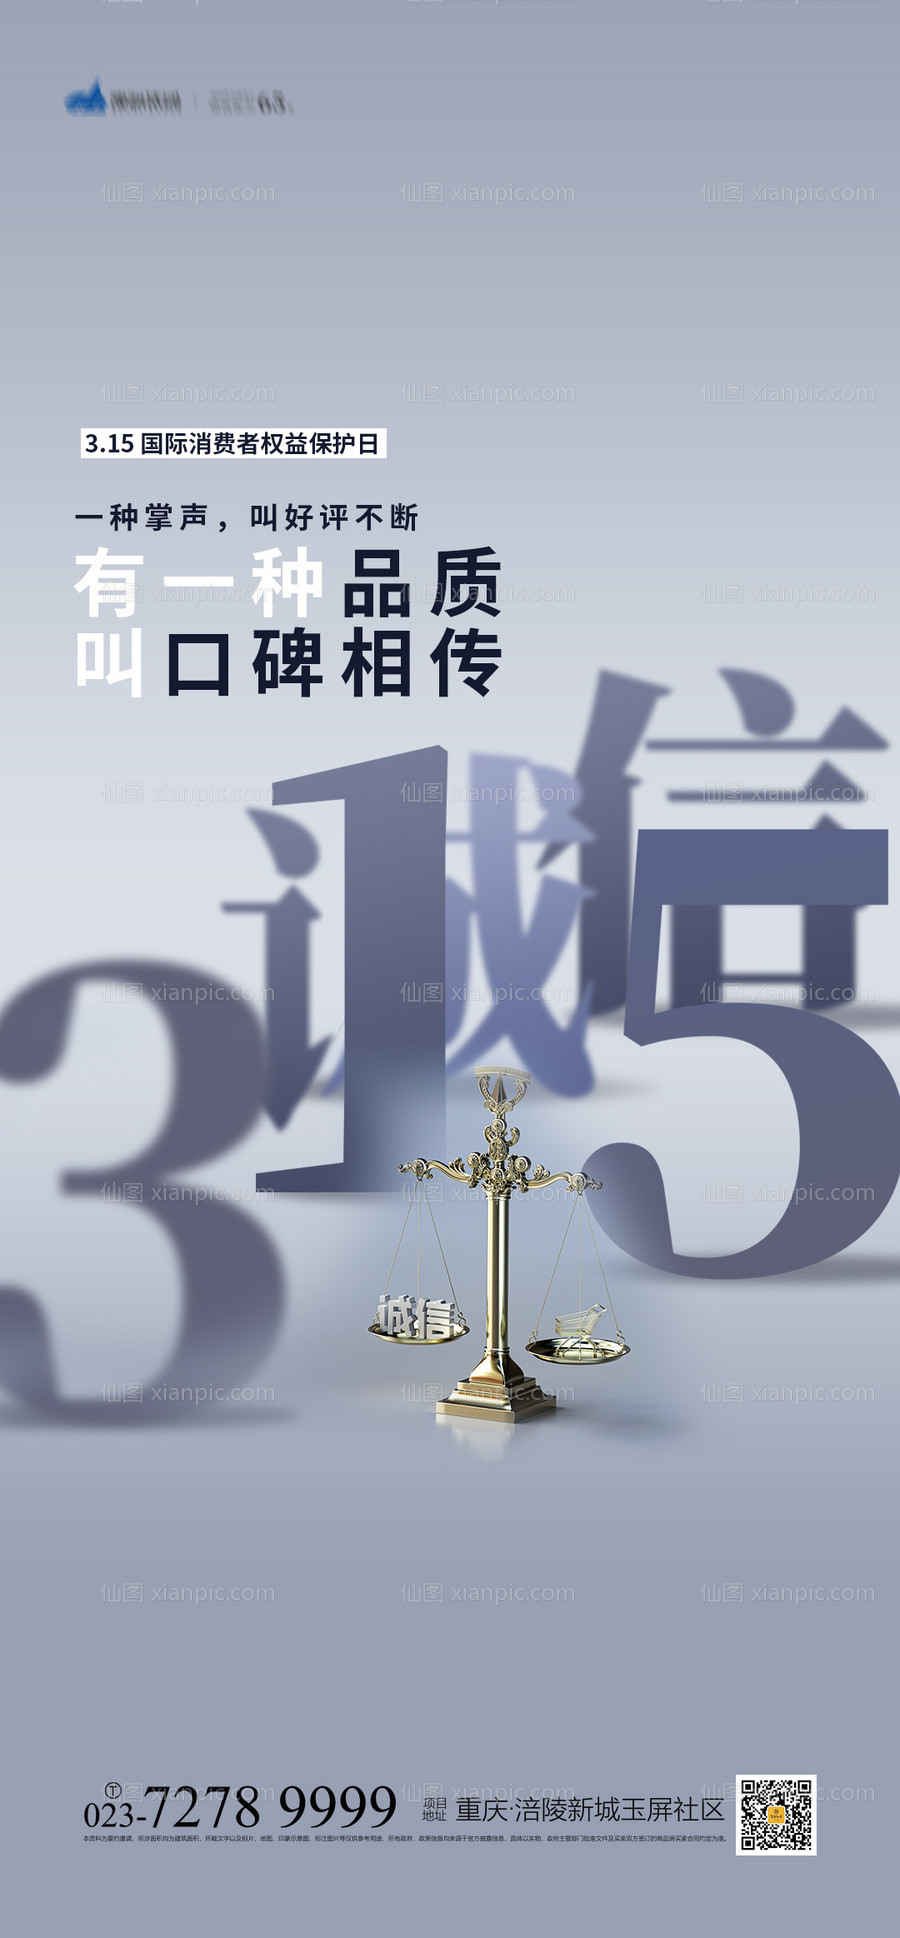 素材乐-315国际消费者权益保护日海报